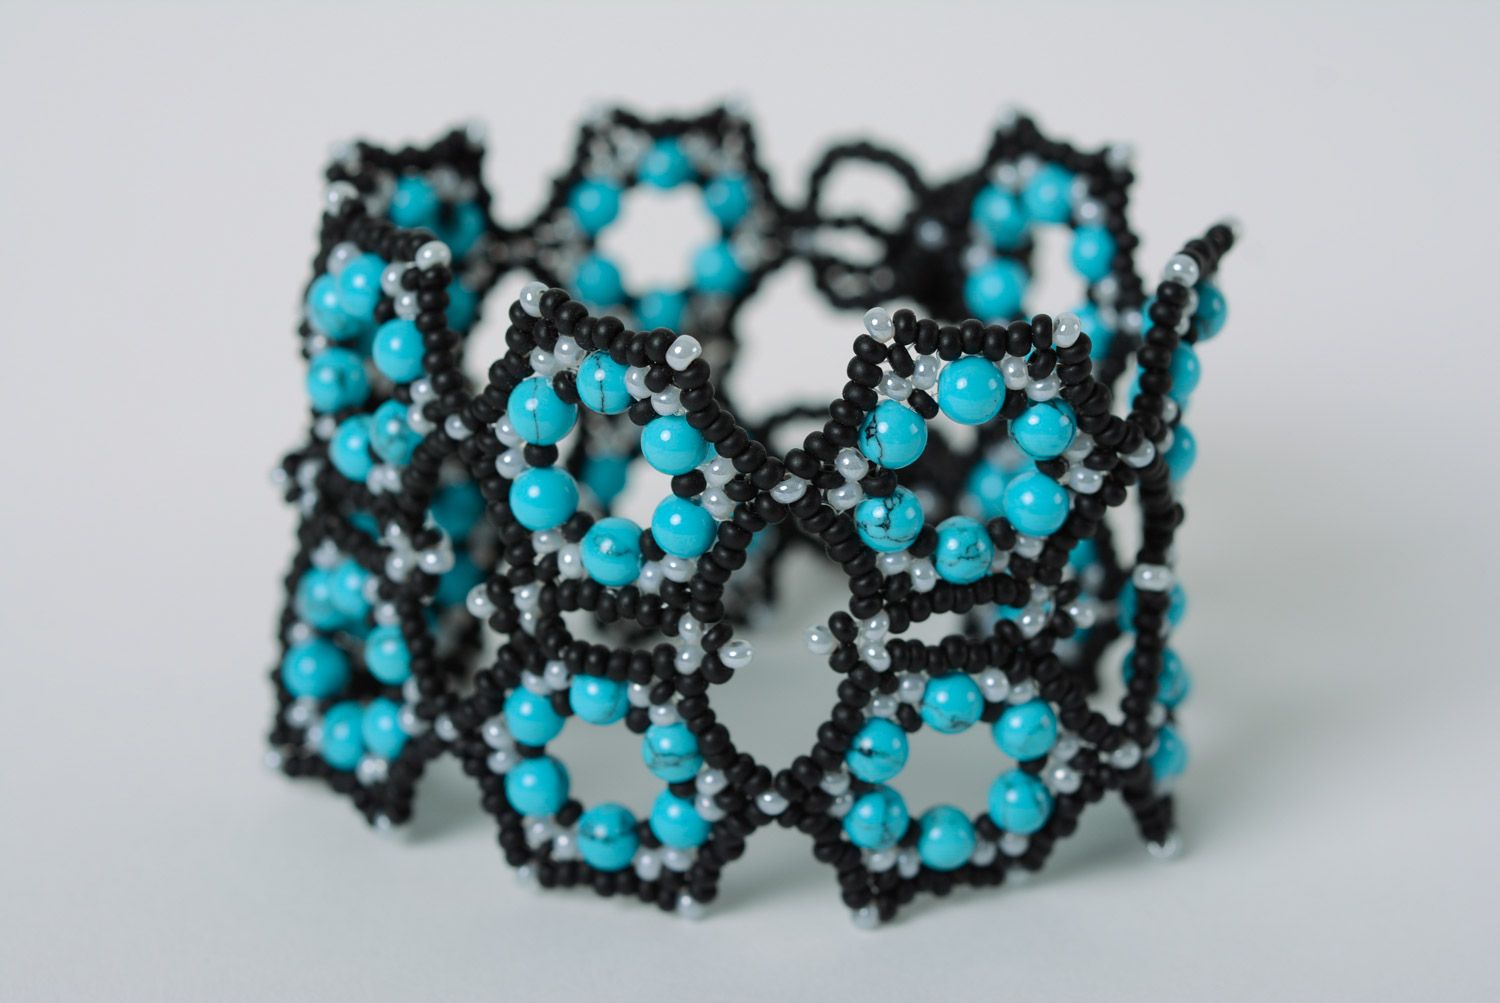 Black and blue handmade designer wrist bracelet woven of beads for women photo 3